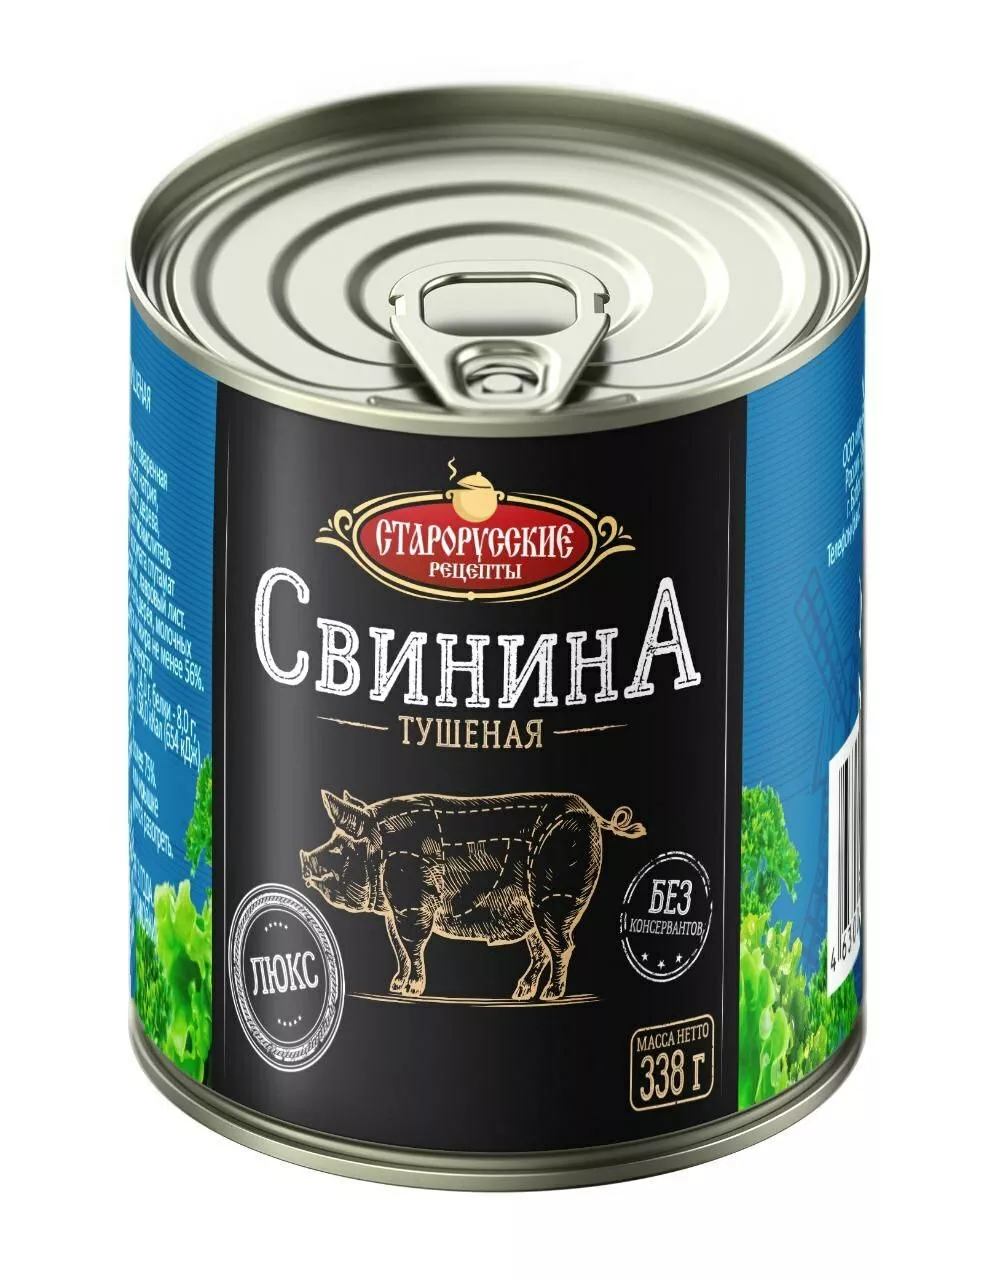 тушенка свинина старорусские в Москве